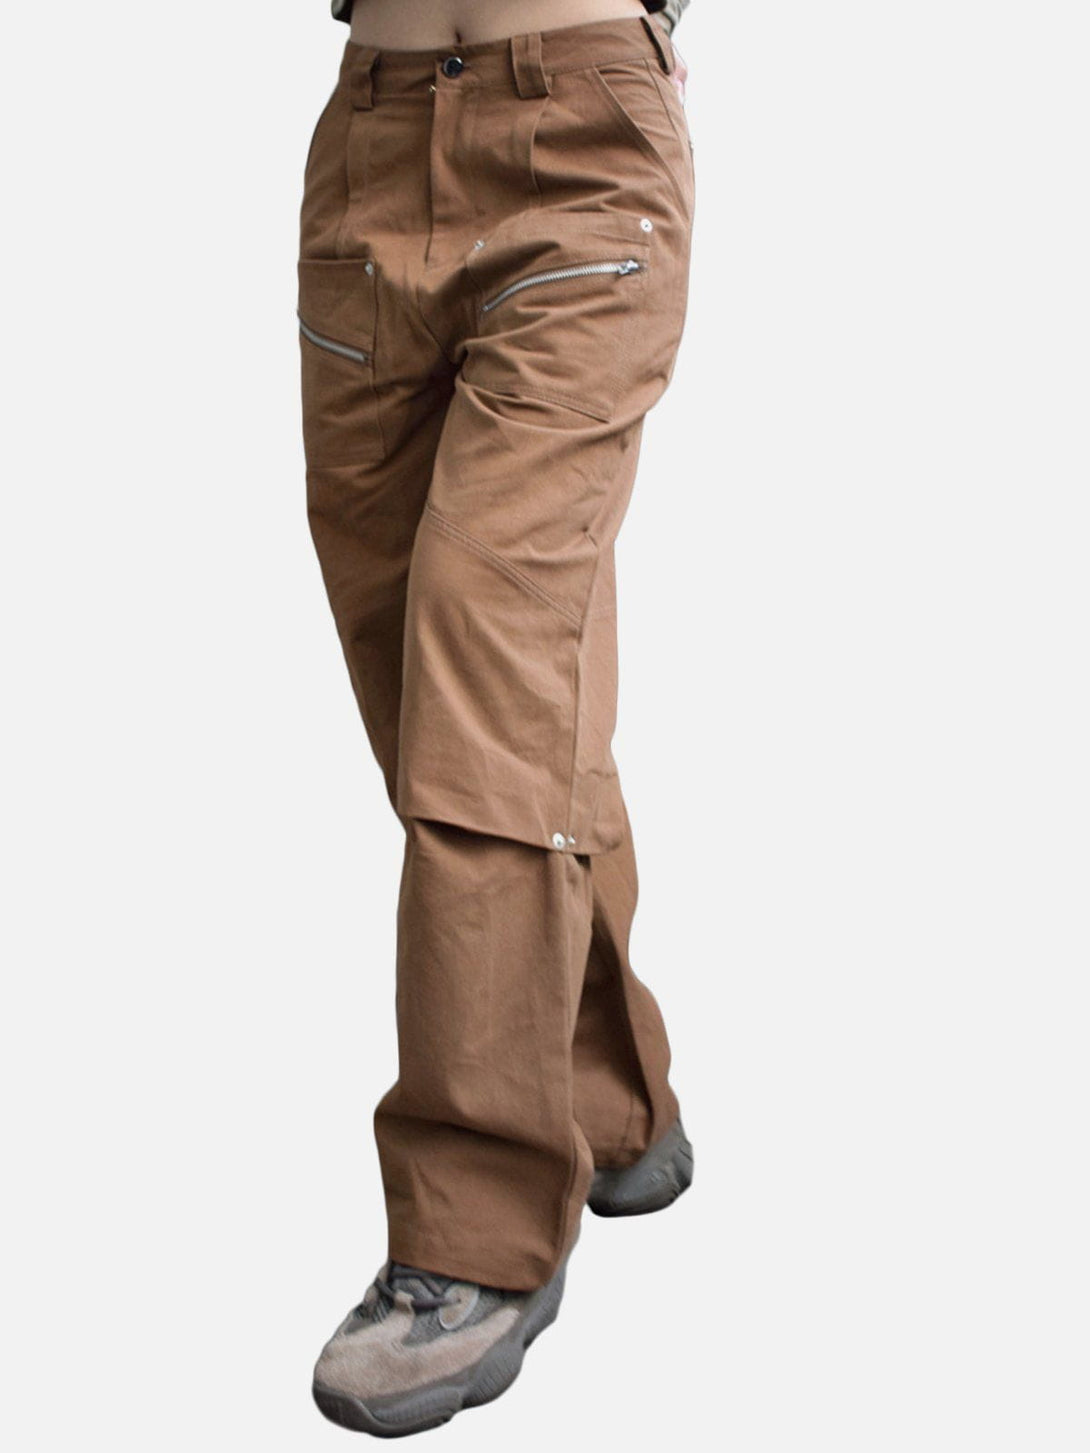 Levefly - Vintage Patchwork Zipper Design Pants - Streetwear Fashion - levefly.com